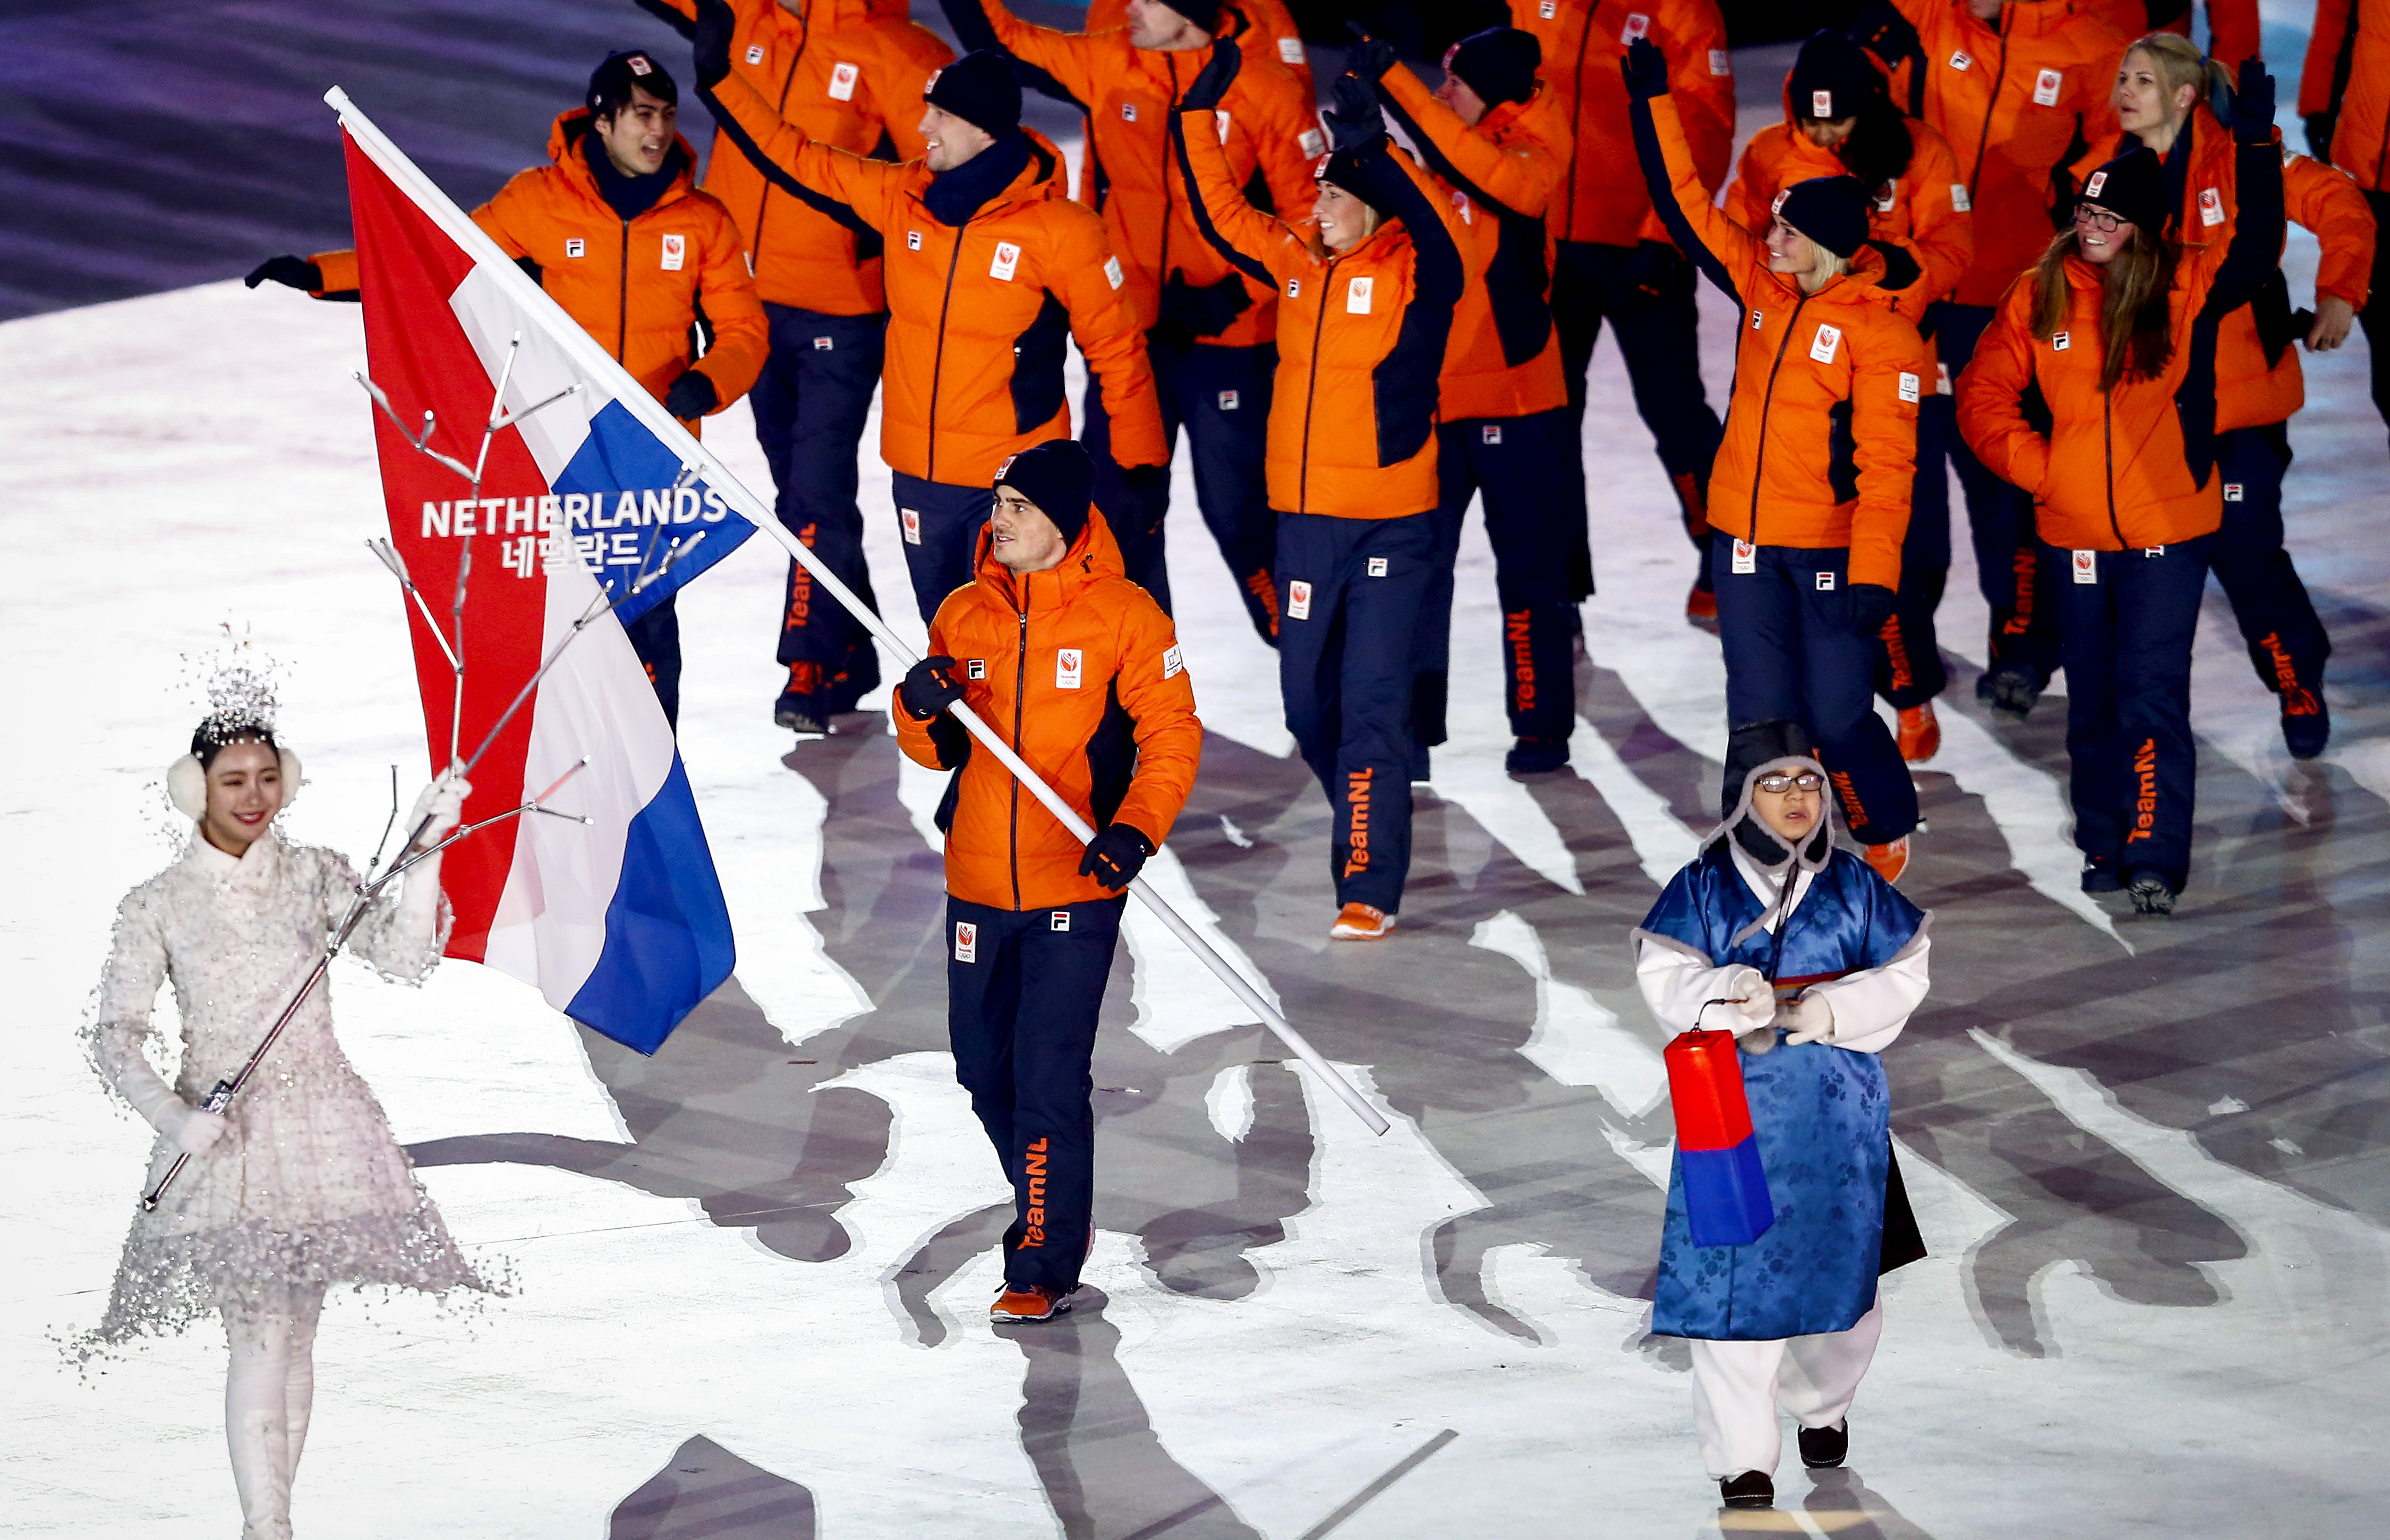 2018-02-09 12:27:33 PYEONGCHANG - Jan Smeekens draagt de Nederlandse vlag het Olympisch Stadion in tijdens de openingsceremonie van de Olympische Winterspelen van Pyeongchang. ANP VINCENT JANNINK